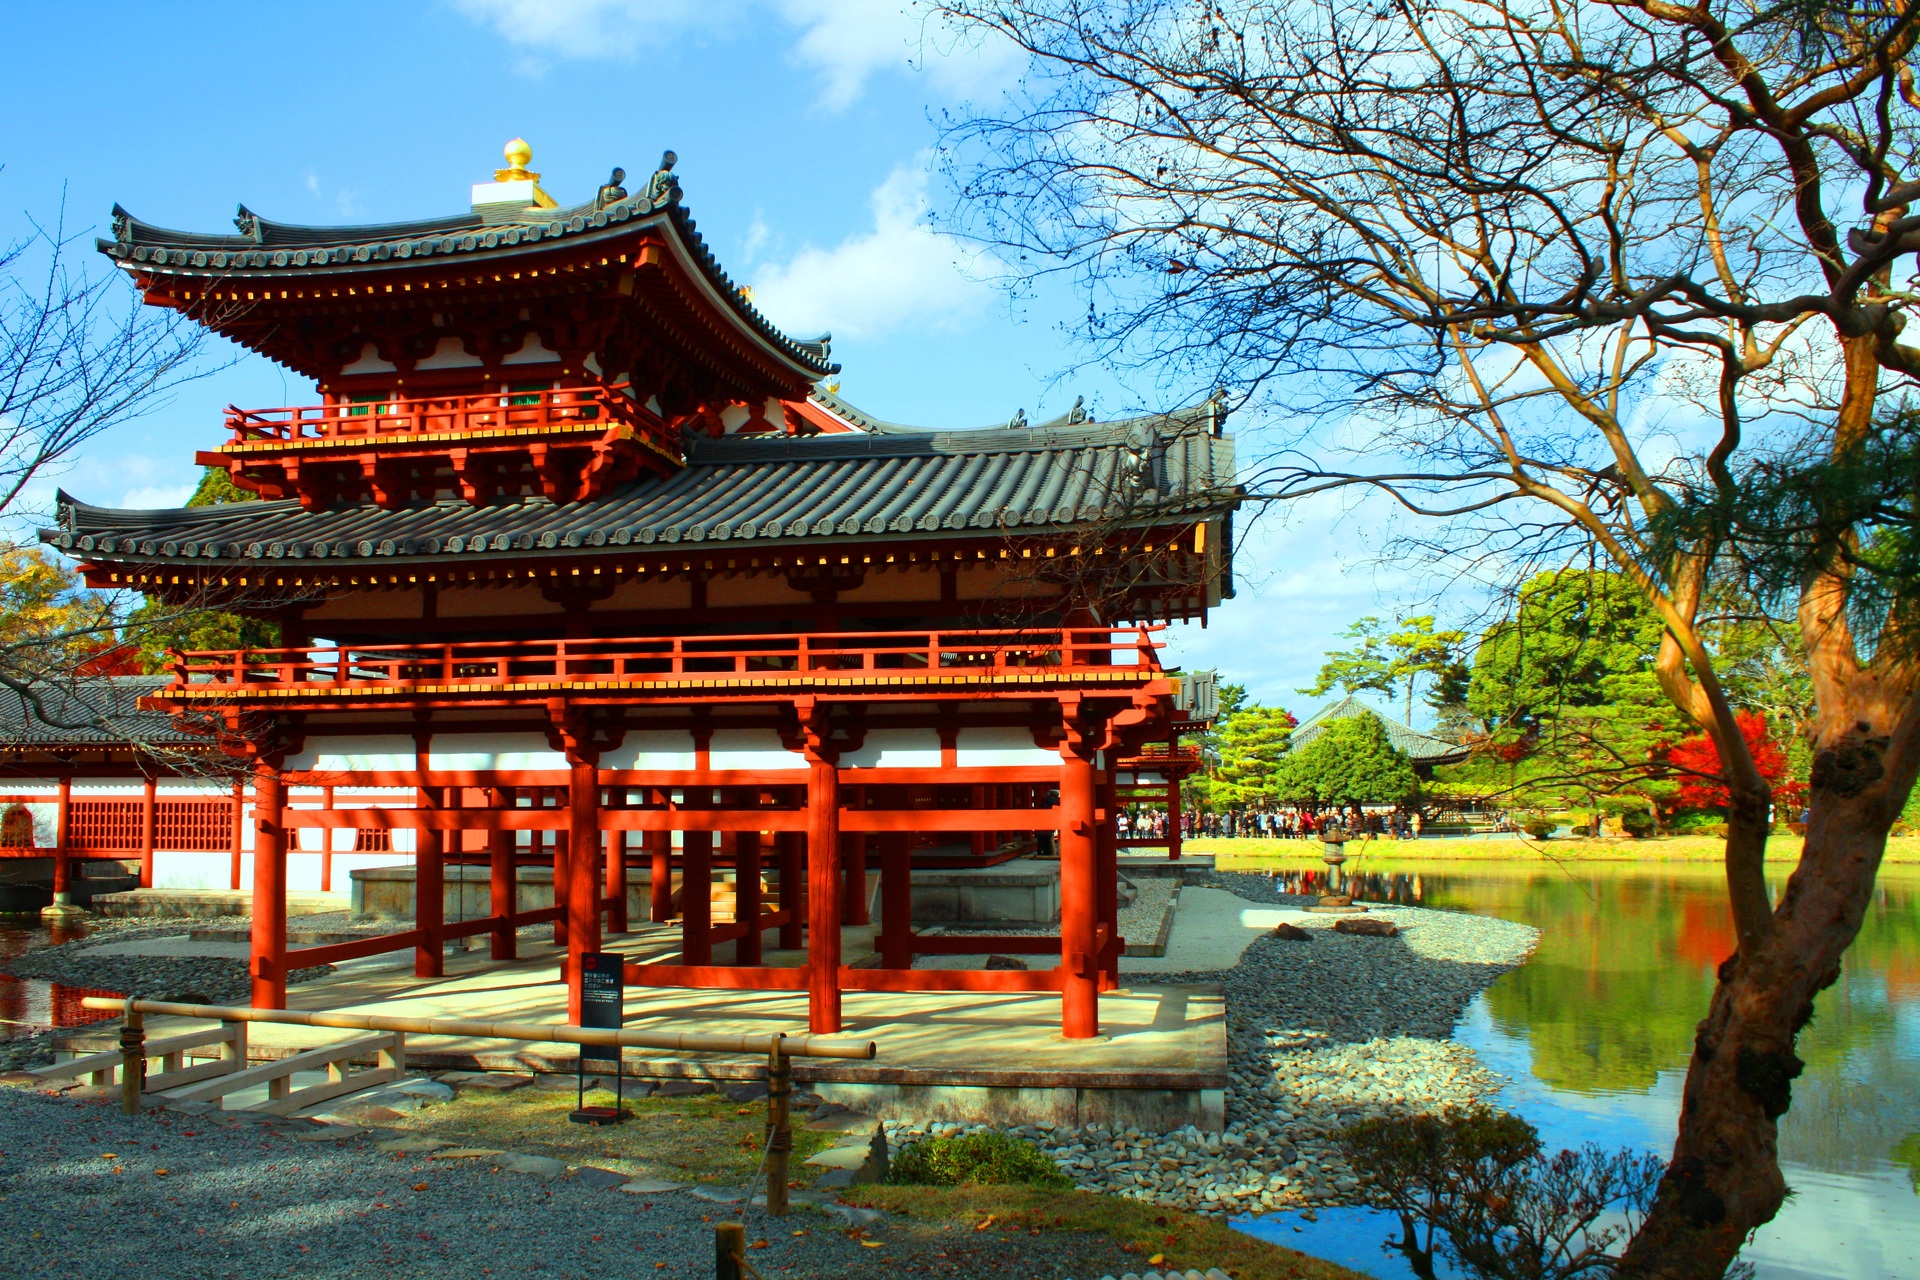 日本の風景 平等院鳳凰堂紅葉 壁紙19x1280 壁紙館